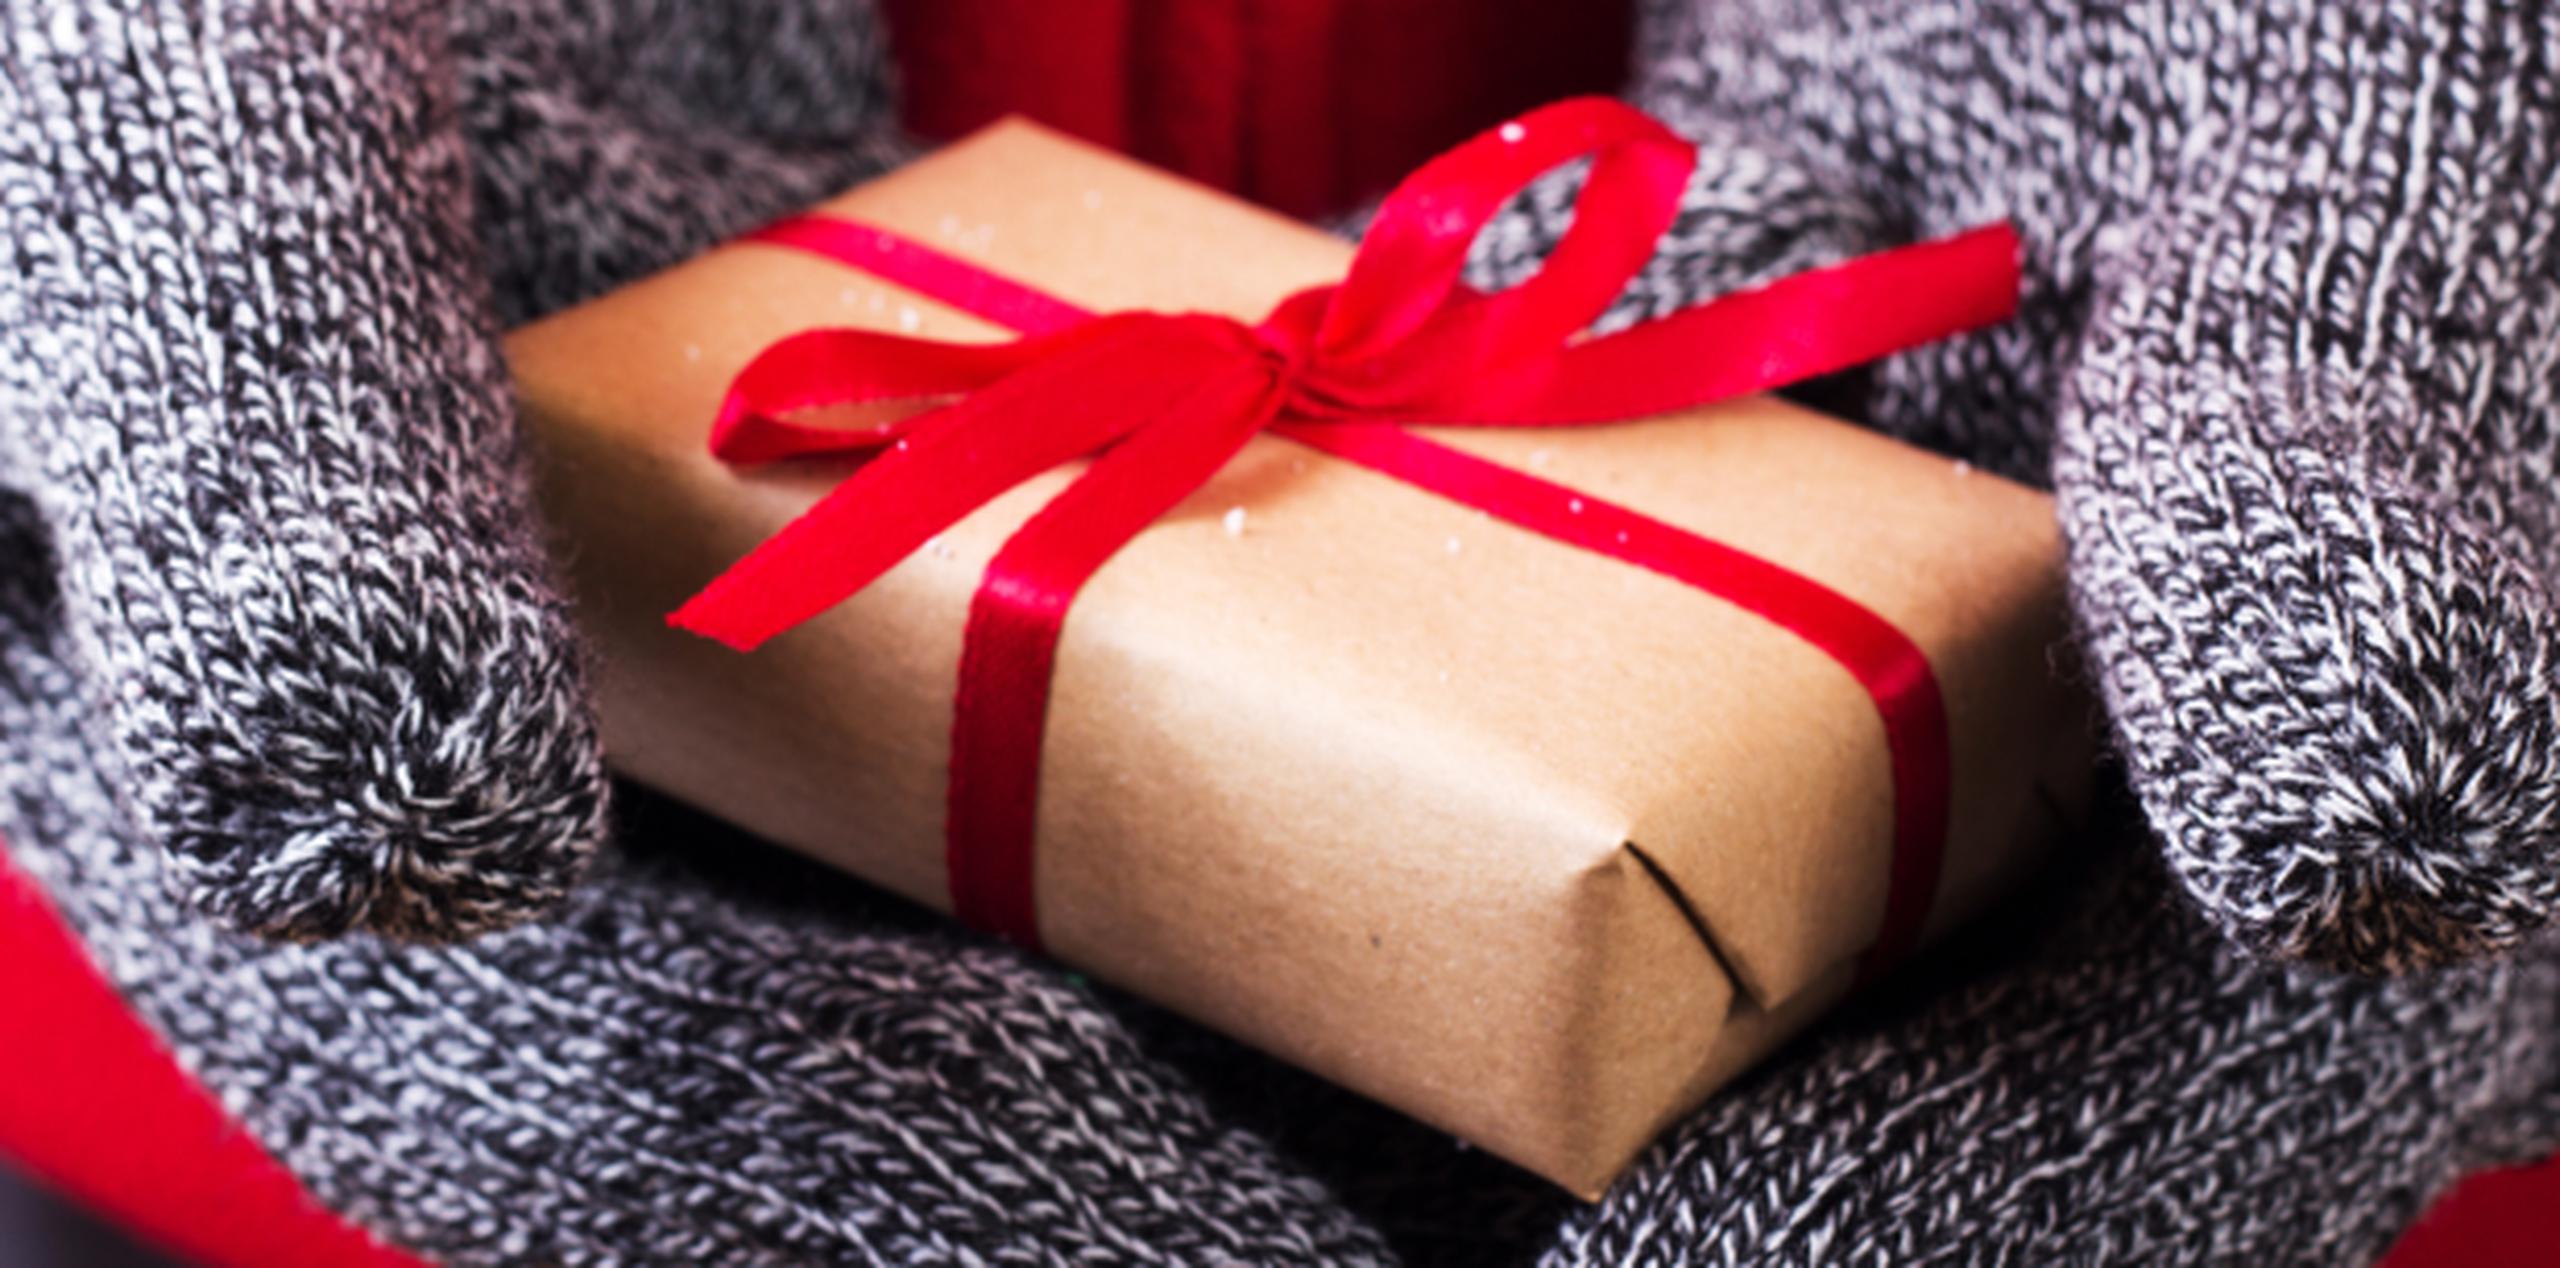 Los investigadores encontraron las drogas en 10 cajas envueltas en regalos. (Archivo)